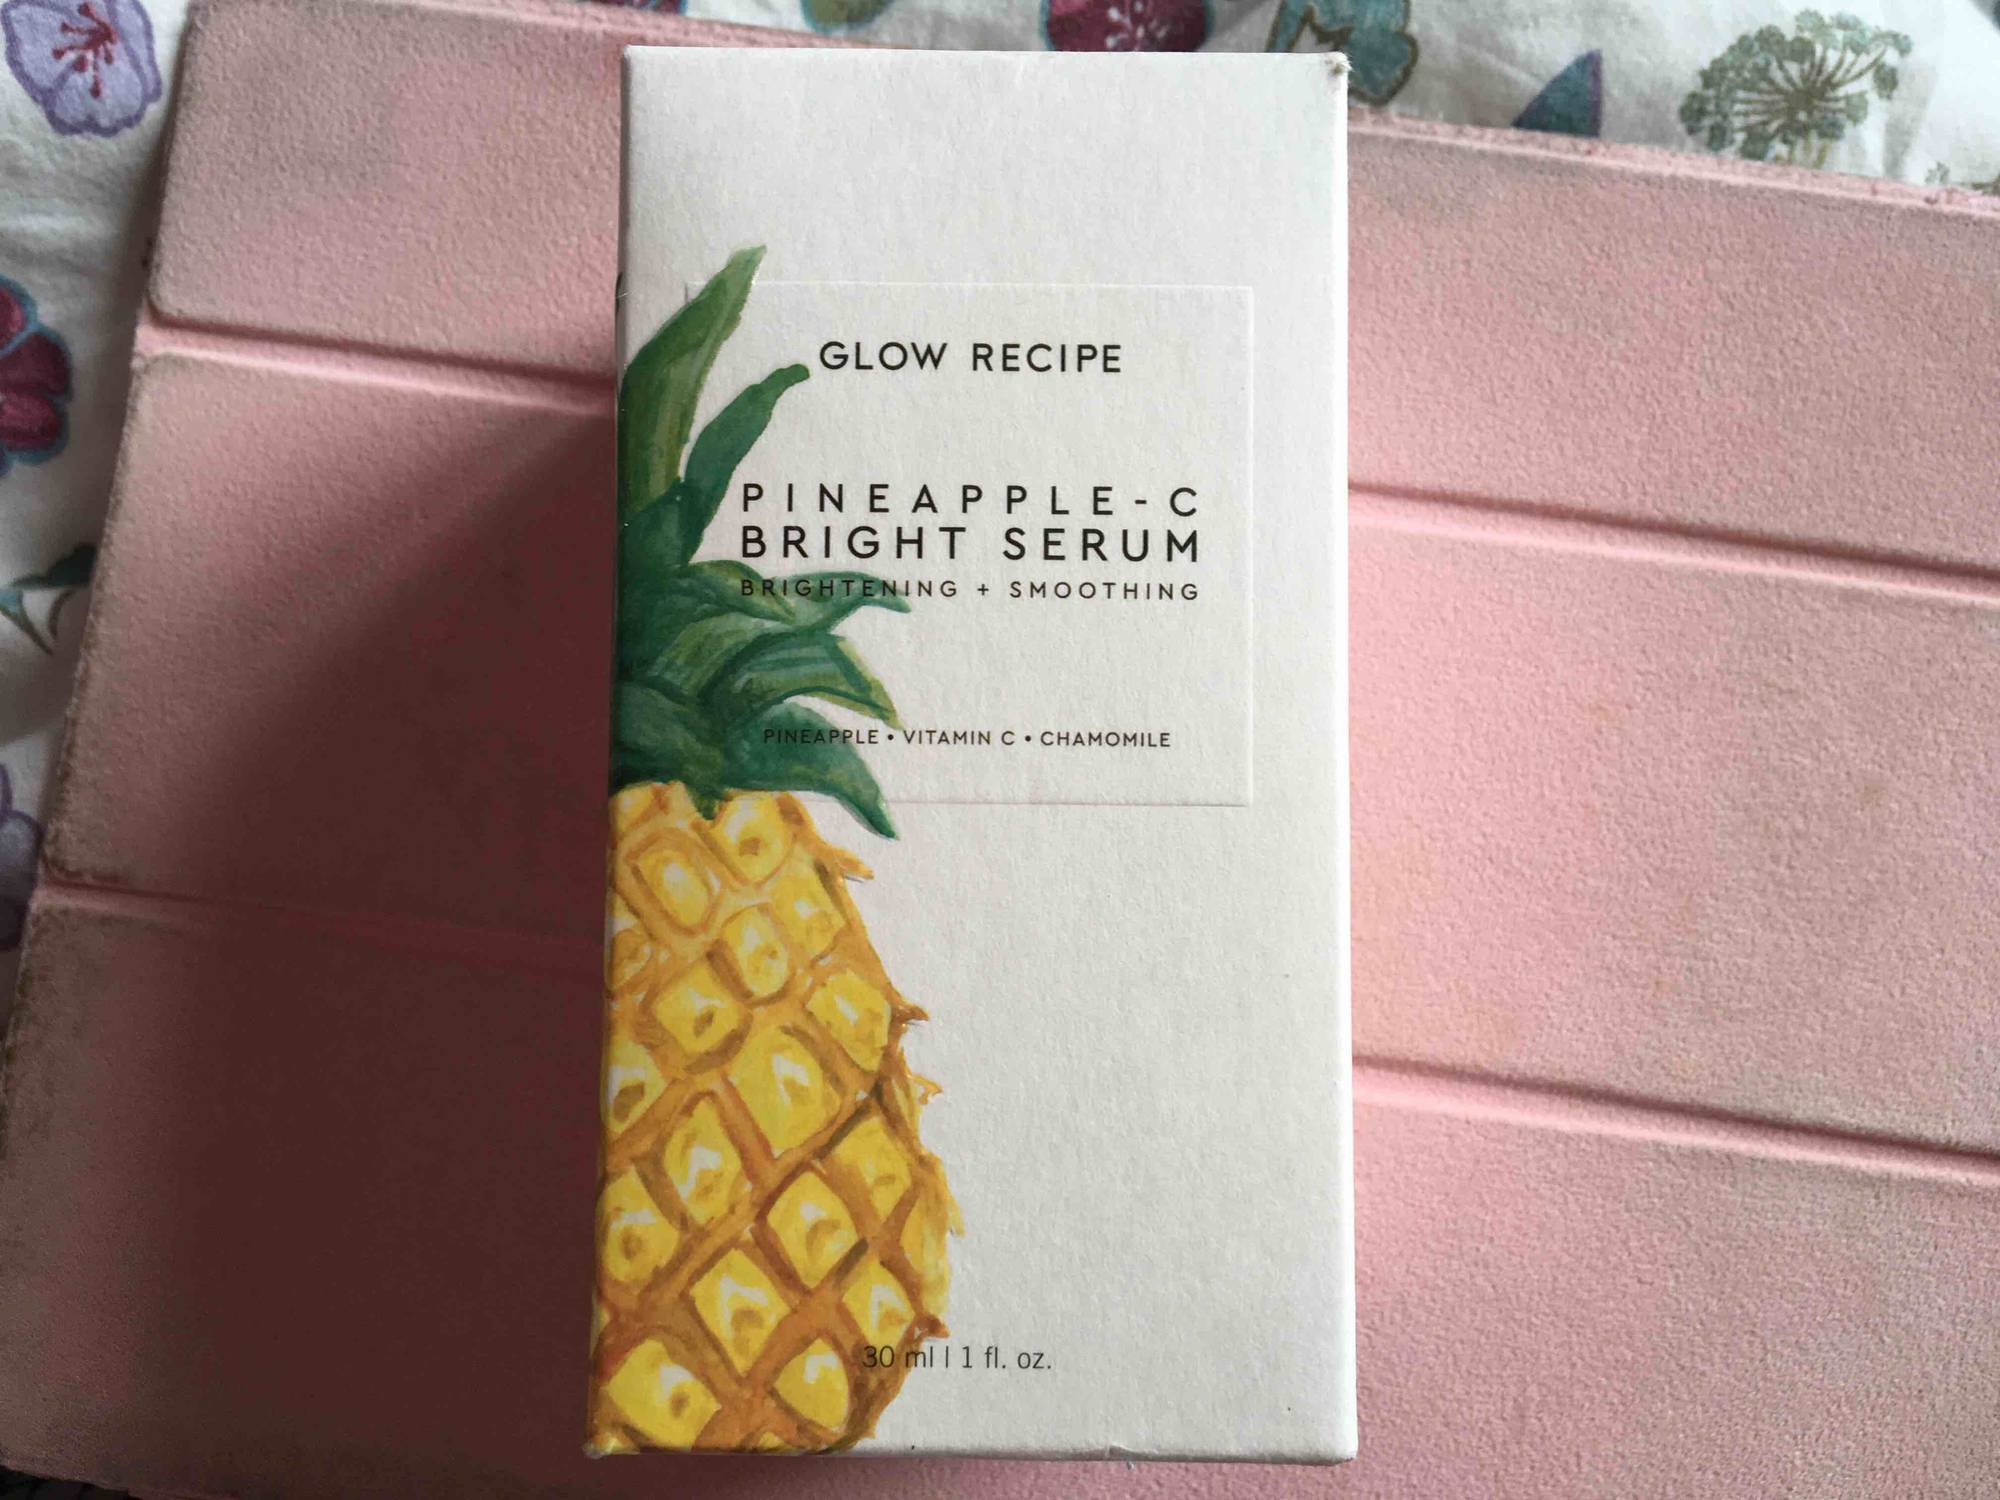 GLOW RECIPE - Pineapple - C bright serum 